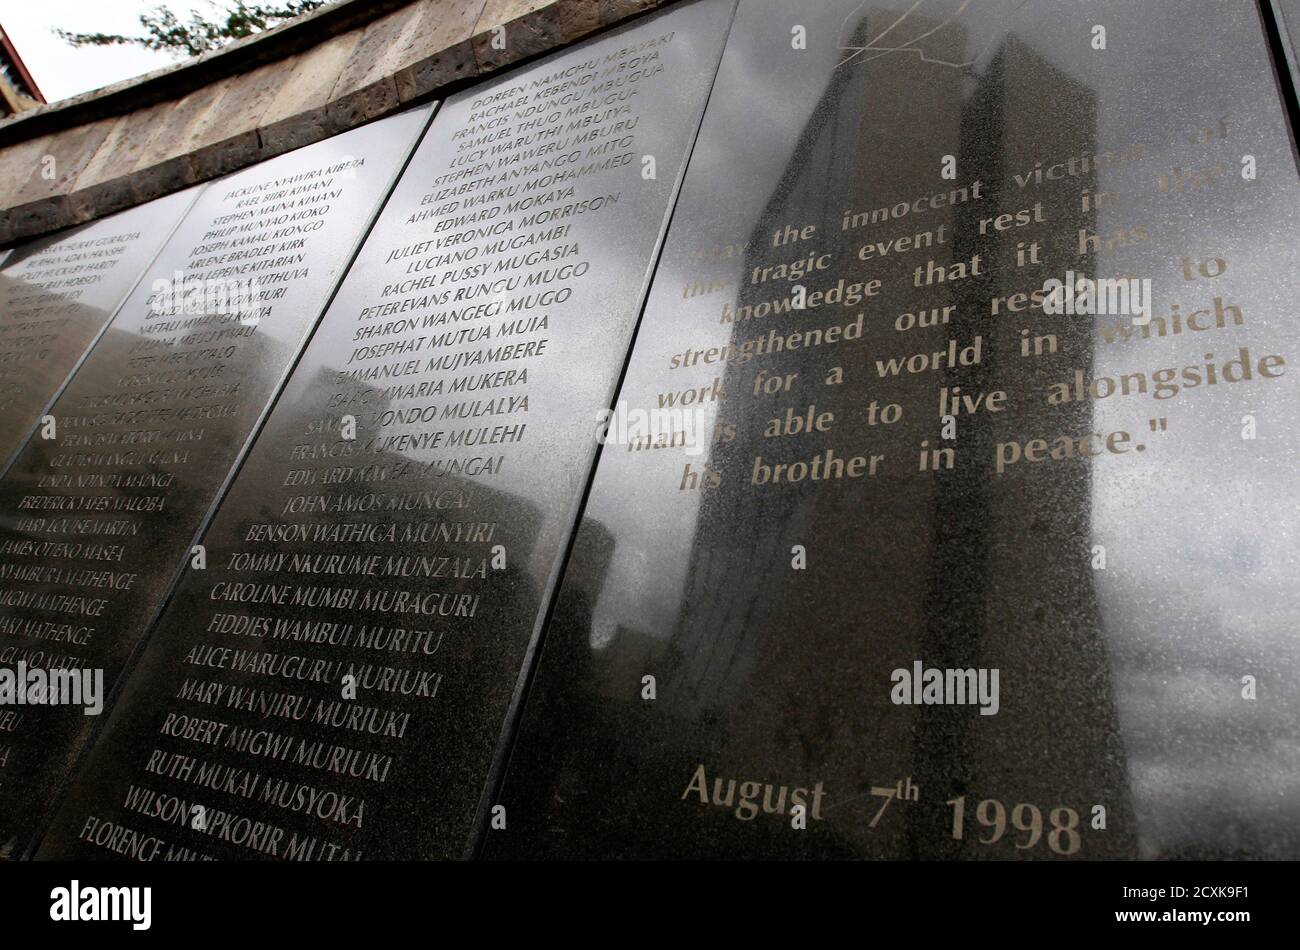 Les noms des 248 personnes tuées lors du bombardement de l'ambassade des États-Unis en 1998 sont visibles sur le mur commémoratif à Nairobi le 2 mai 2011. Selon les responsables, le dirigeant d'Al Qaïda, Osama ben Laden, a été tué dans un raid en hélicoptère américain dans un manoir près de la capitale pakistanaise, Islamabad, tôt lundi, mettant fin à une chasse mondiale de près de 10 ans pour le cerveau des attentats du 11 septembre. Le bâtiment de la Coopérative Bank, qui a également été endommagé lors des attentats à la bombe par camion du 7 août 1998 visant les ambassades américaines au Kenya, se reflète sur le mur commémoratif. REUTERS/Thomas Mukoya (KENYA - Tags: TROUBLES CIVILS POLITIQUE DE CONFLIT) Banque D'Images